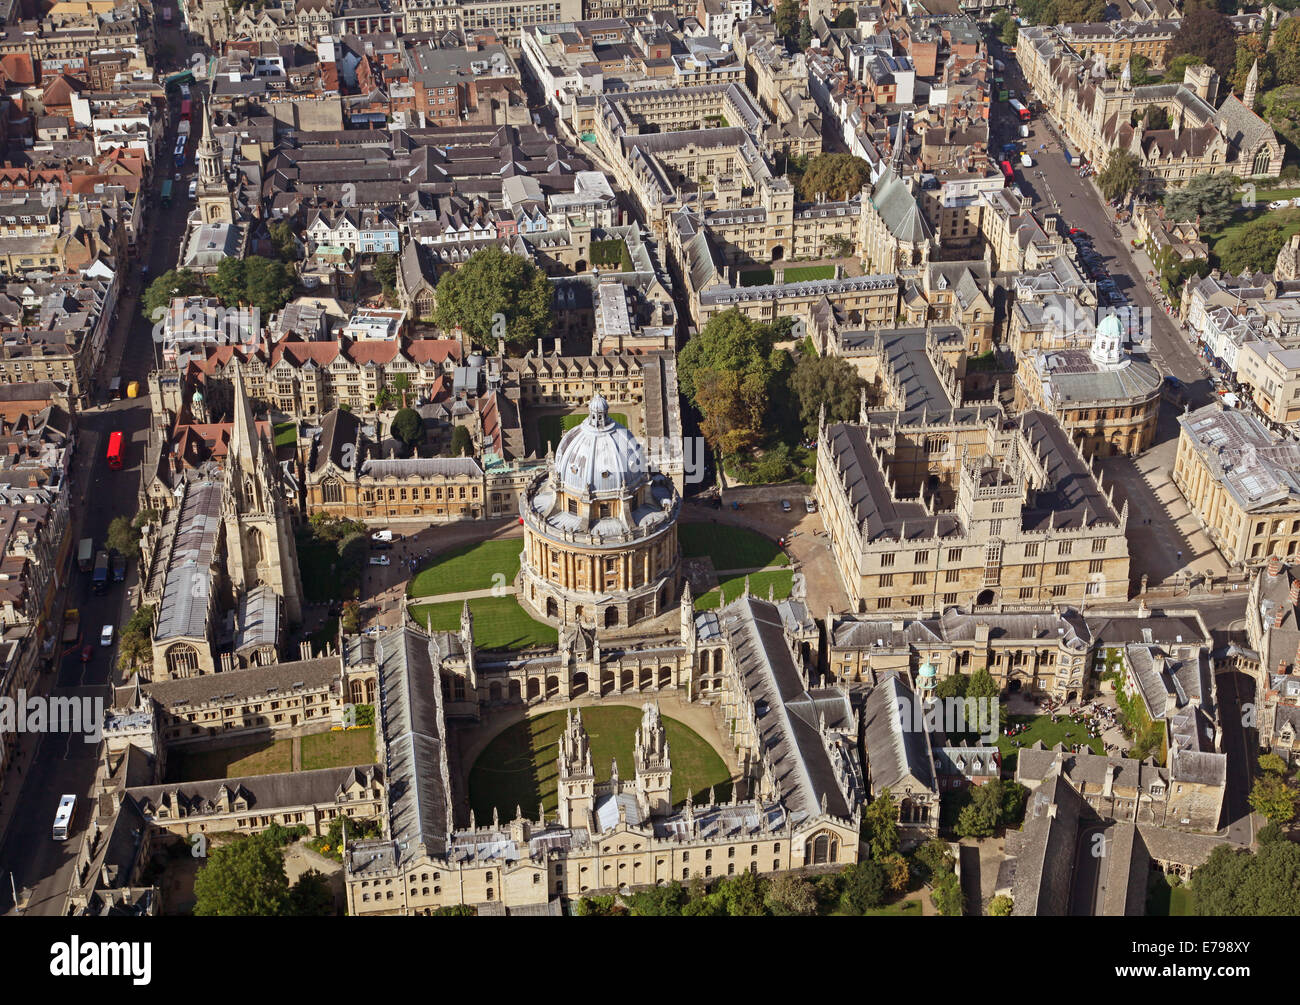 Vista aerea del centro di Oxford con University Colleges e la Radcliffe Camera & Bodleian Library prominenti Foto Stock